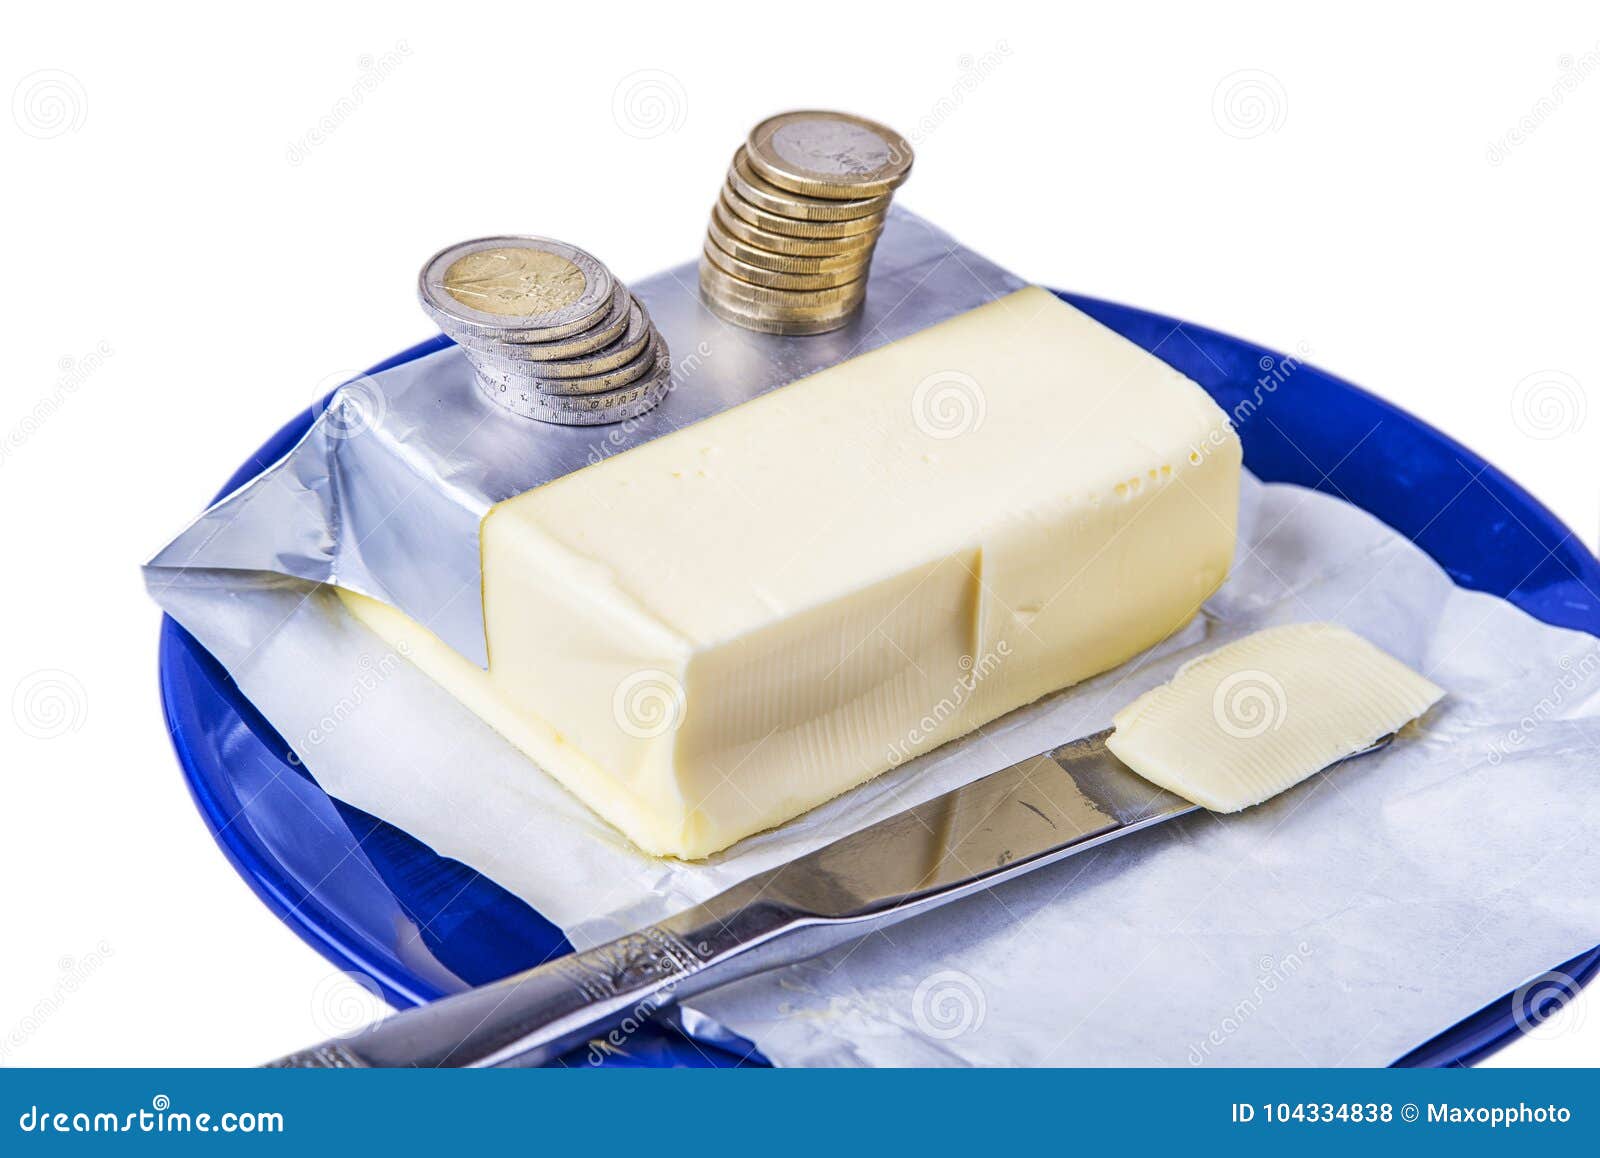 butter coin)